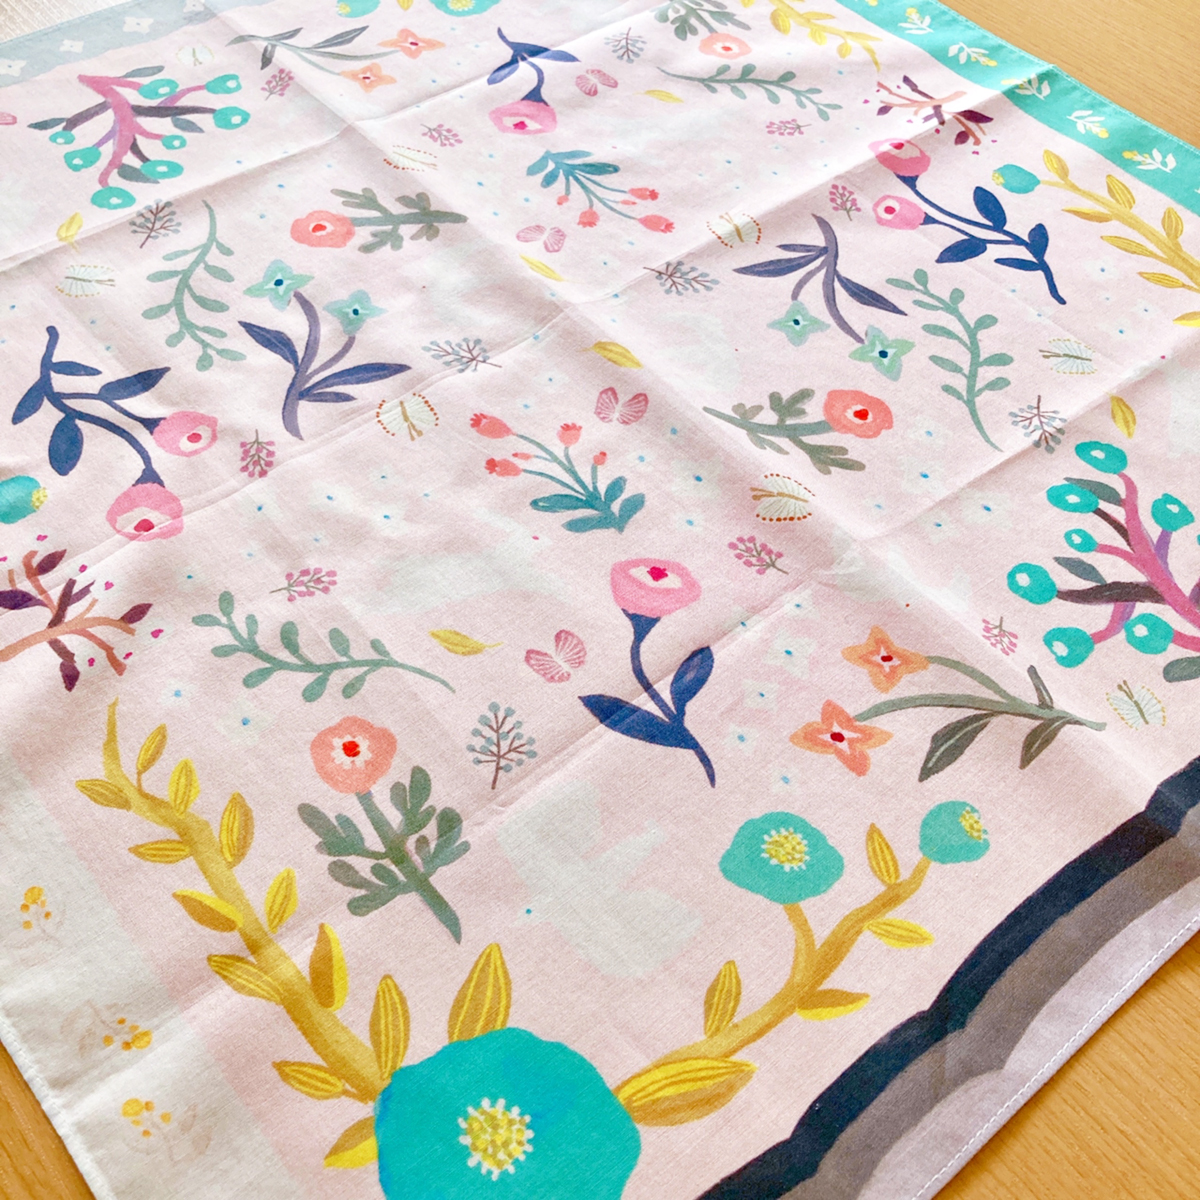 #キャナウのハンカチ屋さん 通販スタート!
私のハンカチ「Ode to Joy」もご購入いただけます。草花と動物が平和や幸せを喜ぶイラストです。4辺の色味や柄を変えてどこを折り目にしても可愛くなるようにしました。全商品 綿100%、国内縫製工場で縫製された大判ハンカチです。
https://t.co/U9SyxXaIon 